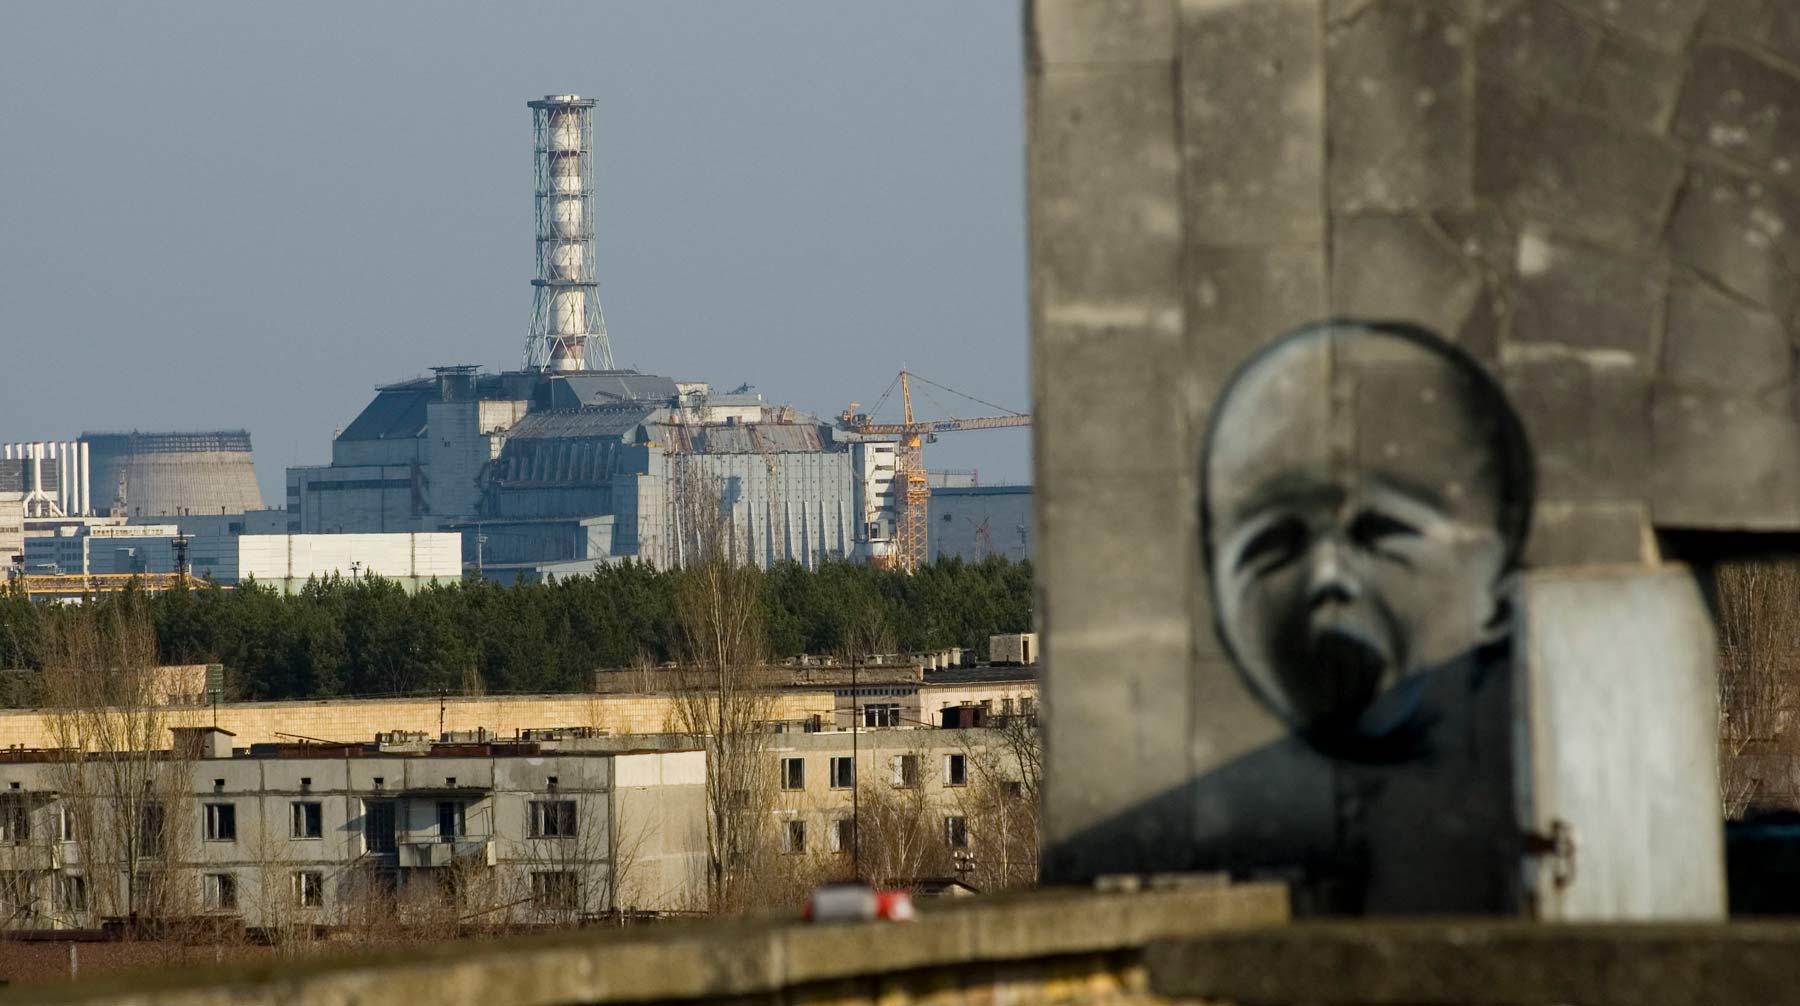 Як аварія на Чорнобильській АЕС вплинула на український постмодернізм?